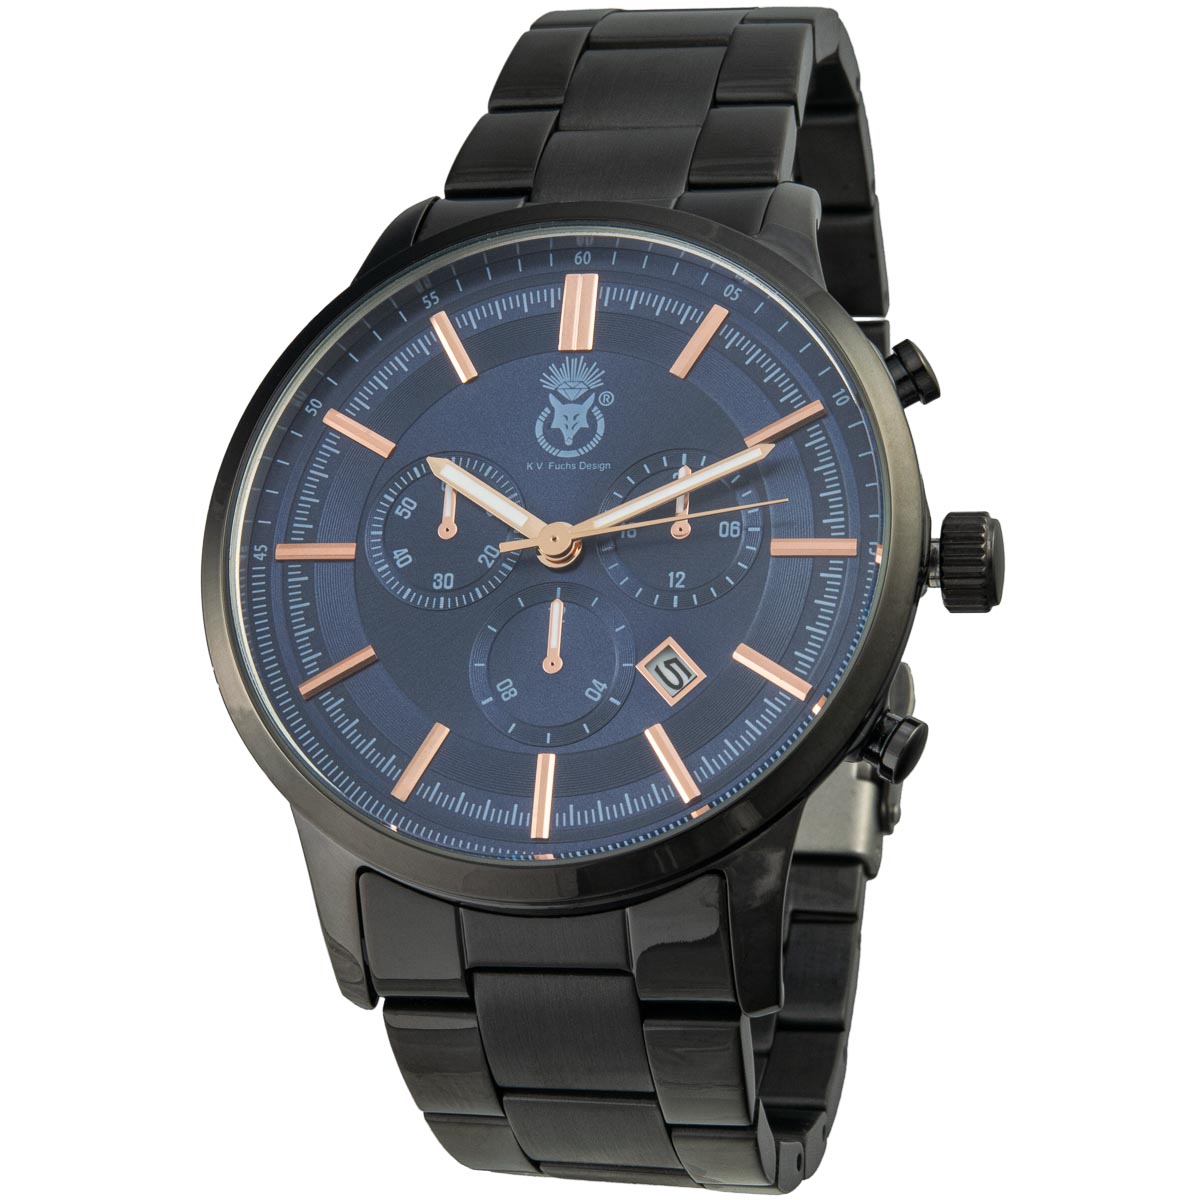 K.V. Fuchs Design Herren Quarzuhr analog Armbanduhr mit Faltschließe in schwarz, blau mit Edelstahlarmband in schwarz »U-79-01-Blau«